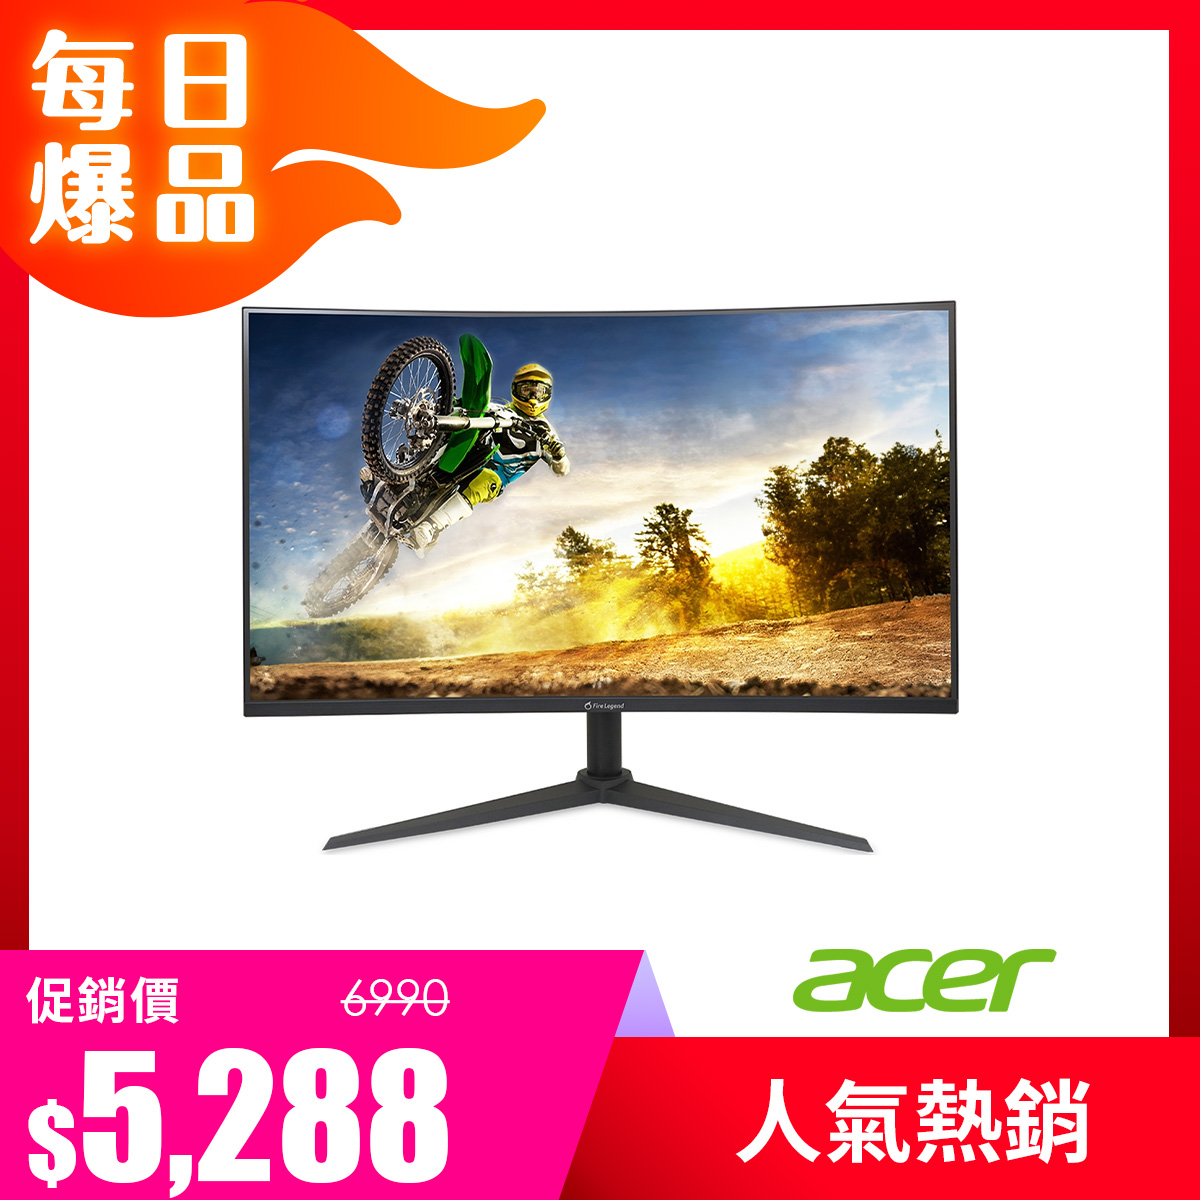 宏碁 Acer 32型 AOPEN 180hz 曲面液晶顯示器